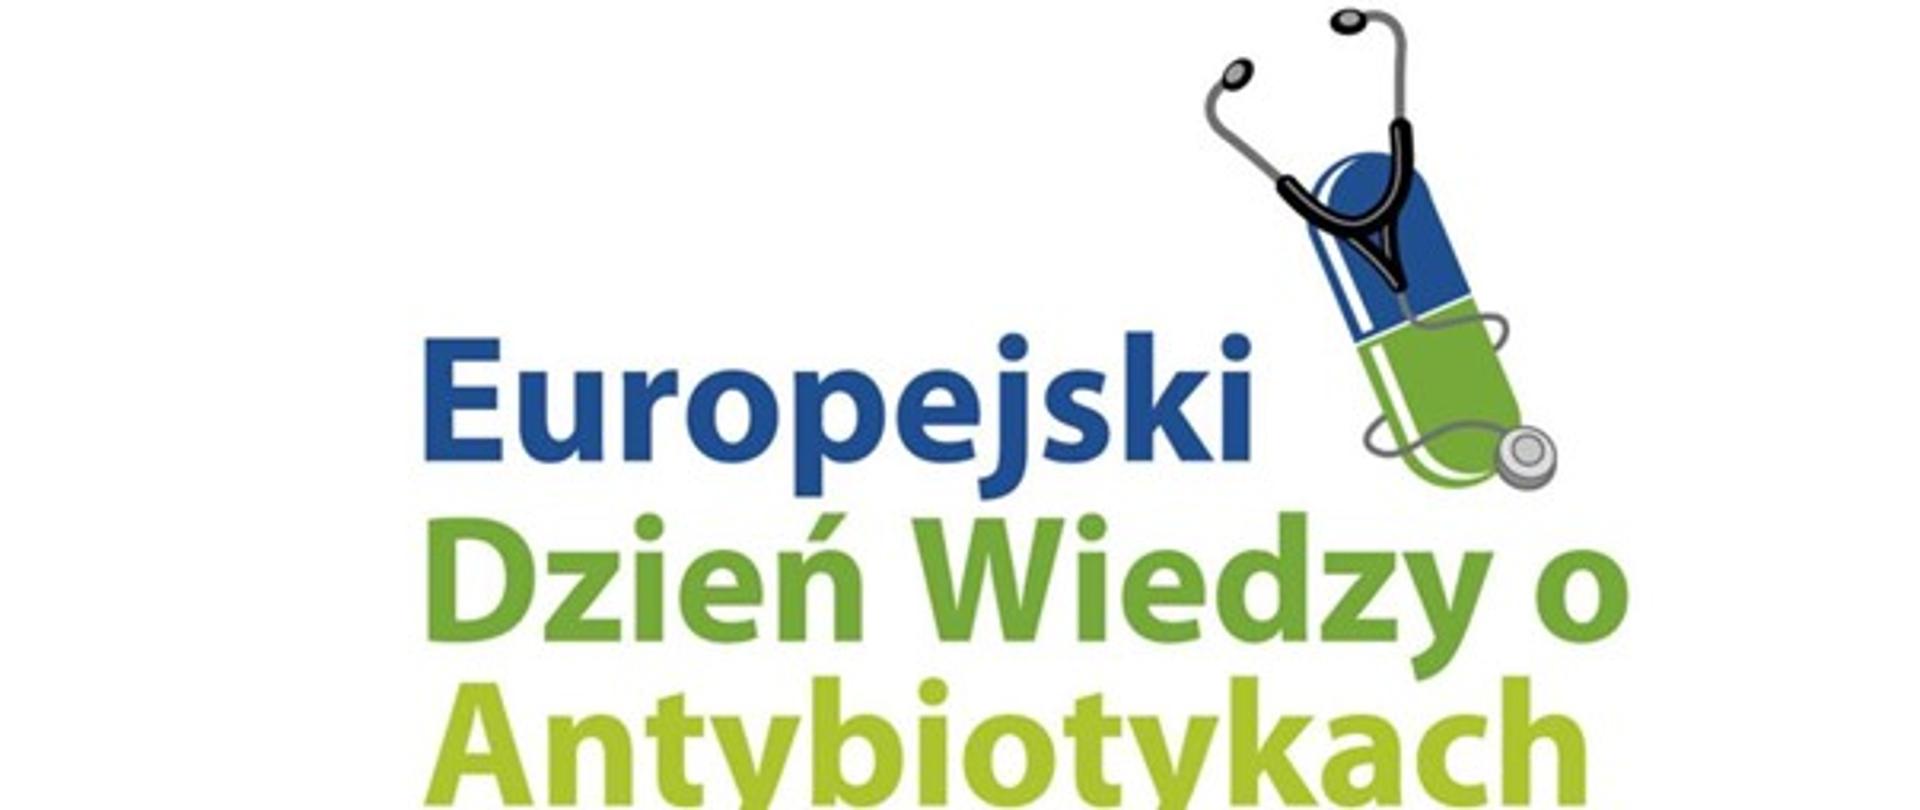 Plakat z napisem "Europejski Dzień Wiedzy o Antybiotykach" oraz kapsułką ze stetoskopem